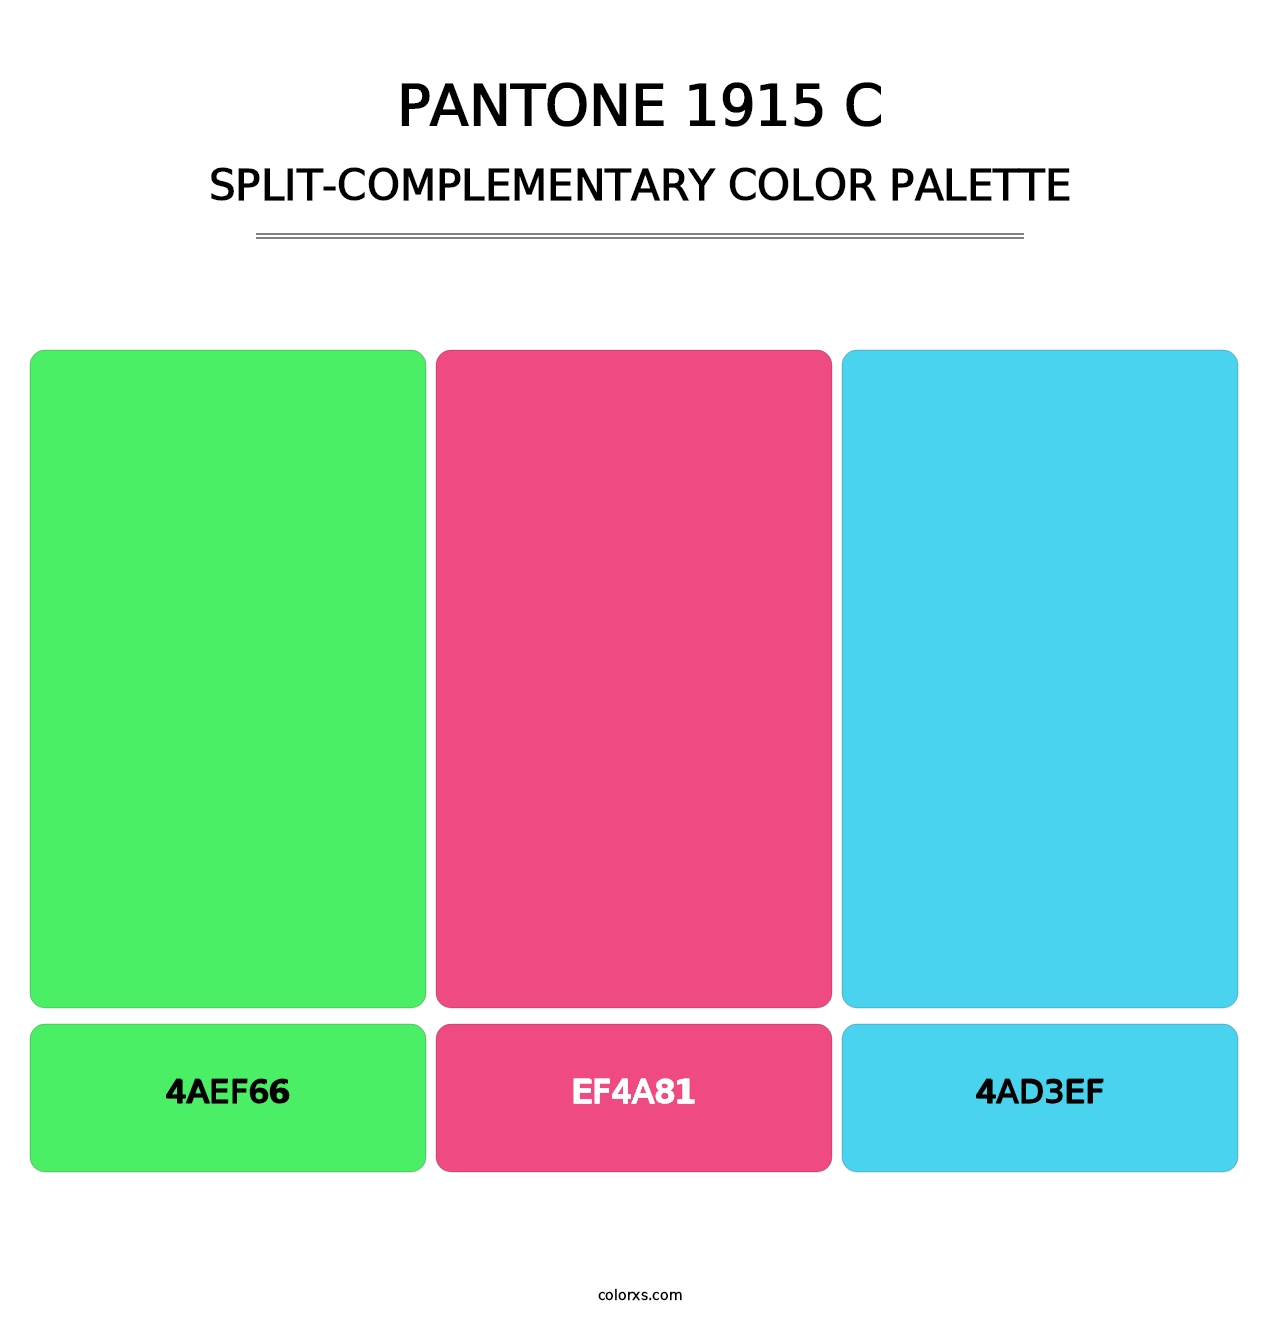 PANTONE 1915 C - Split-Complementary Color Palette